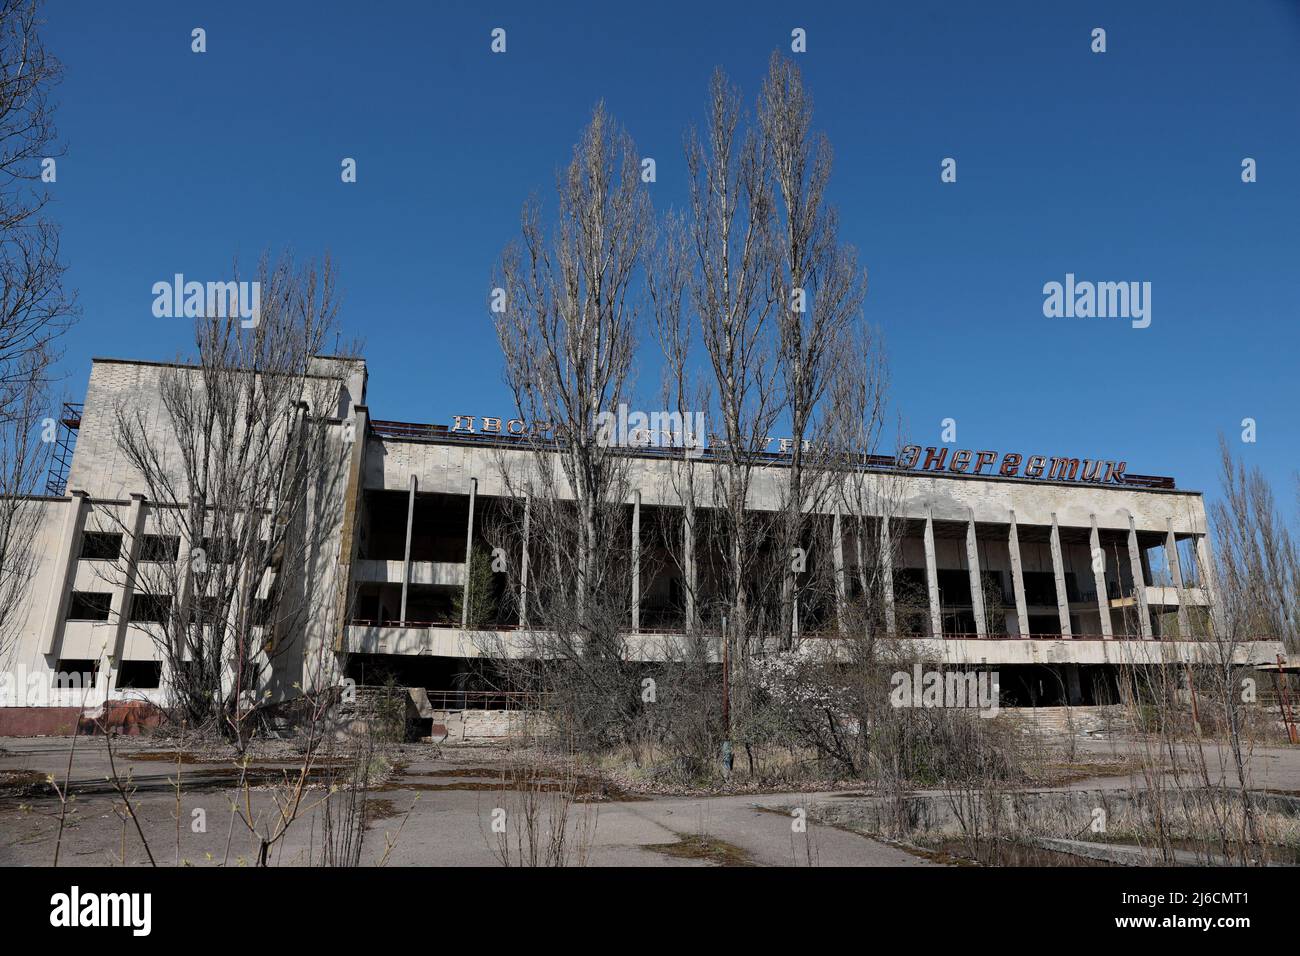 Región de Kiev, Ucrania - April28, 2022 - El Palacio Energetik de la Cultura está situado en la ciudad fantasma de Prypiat abandonada después del desastre de Chernobil en 1986, en la región de Kiev, al norte de Ucrania. Foto de Hennadii Minchenko/Ukrinform/ABACAPRESS.COM Foto de stock